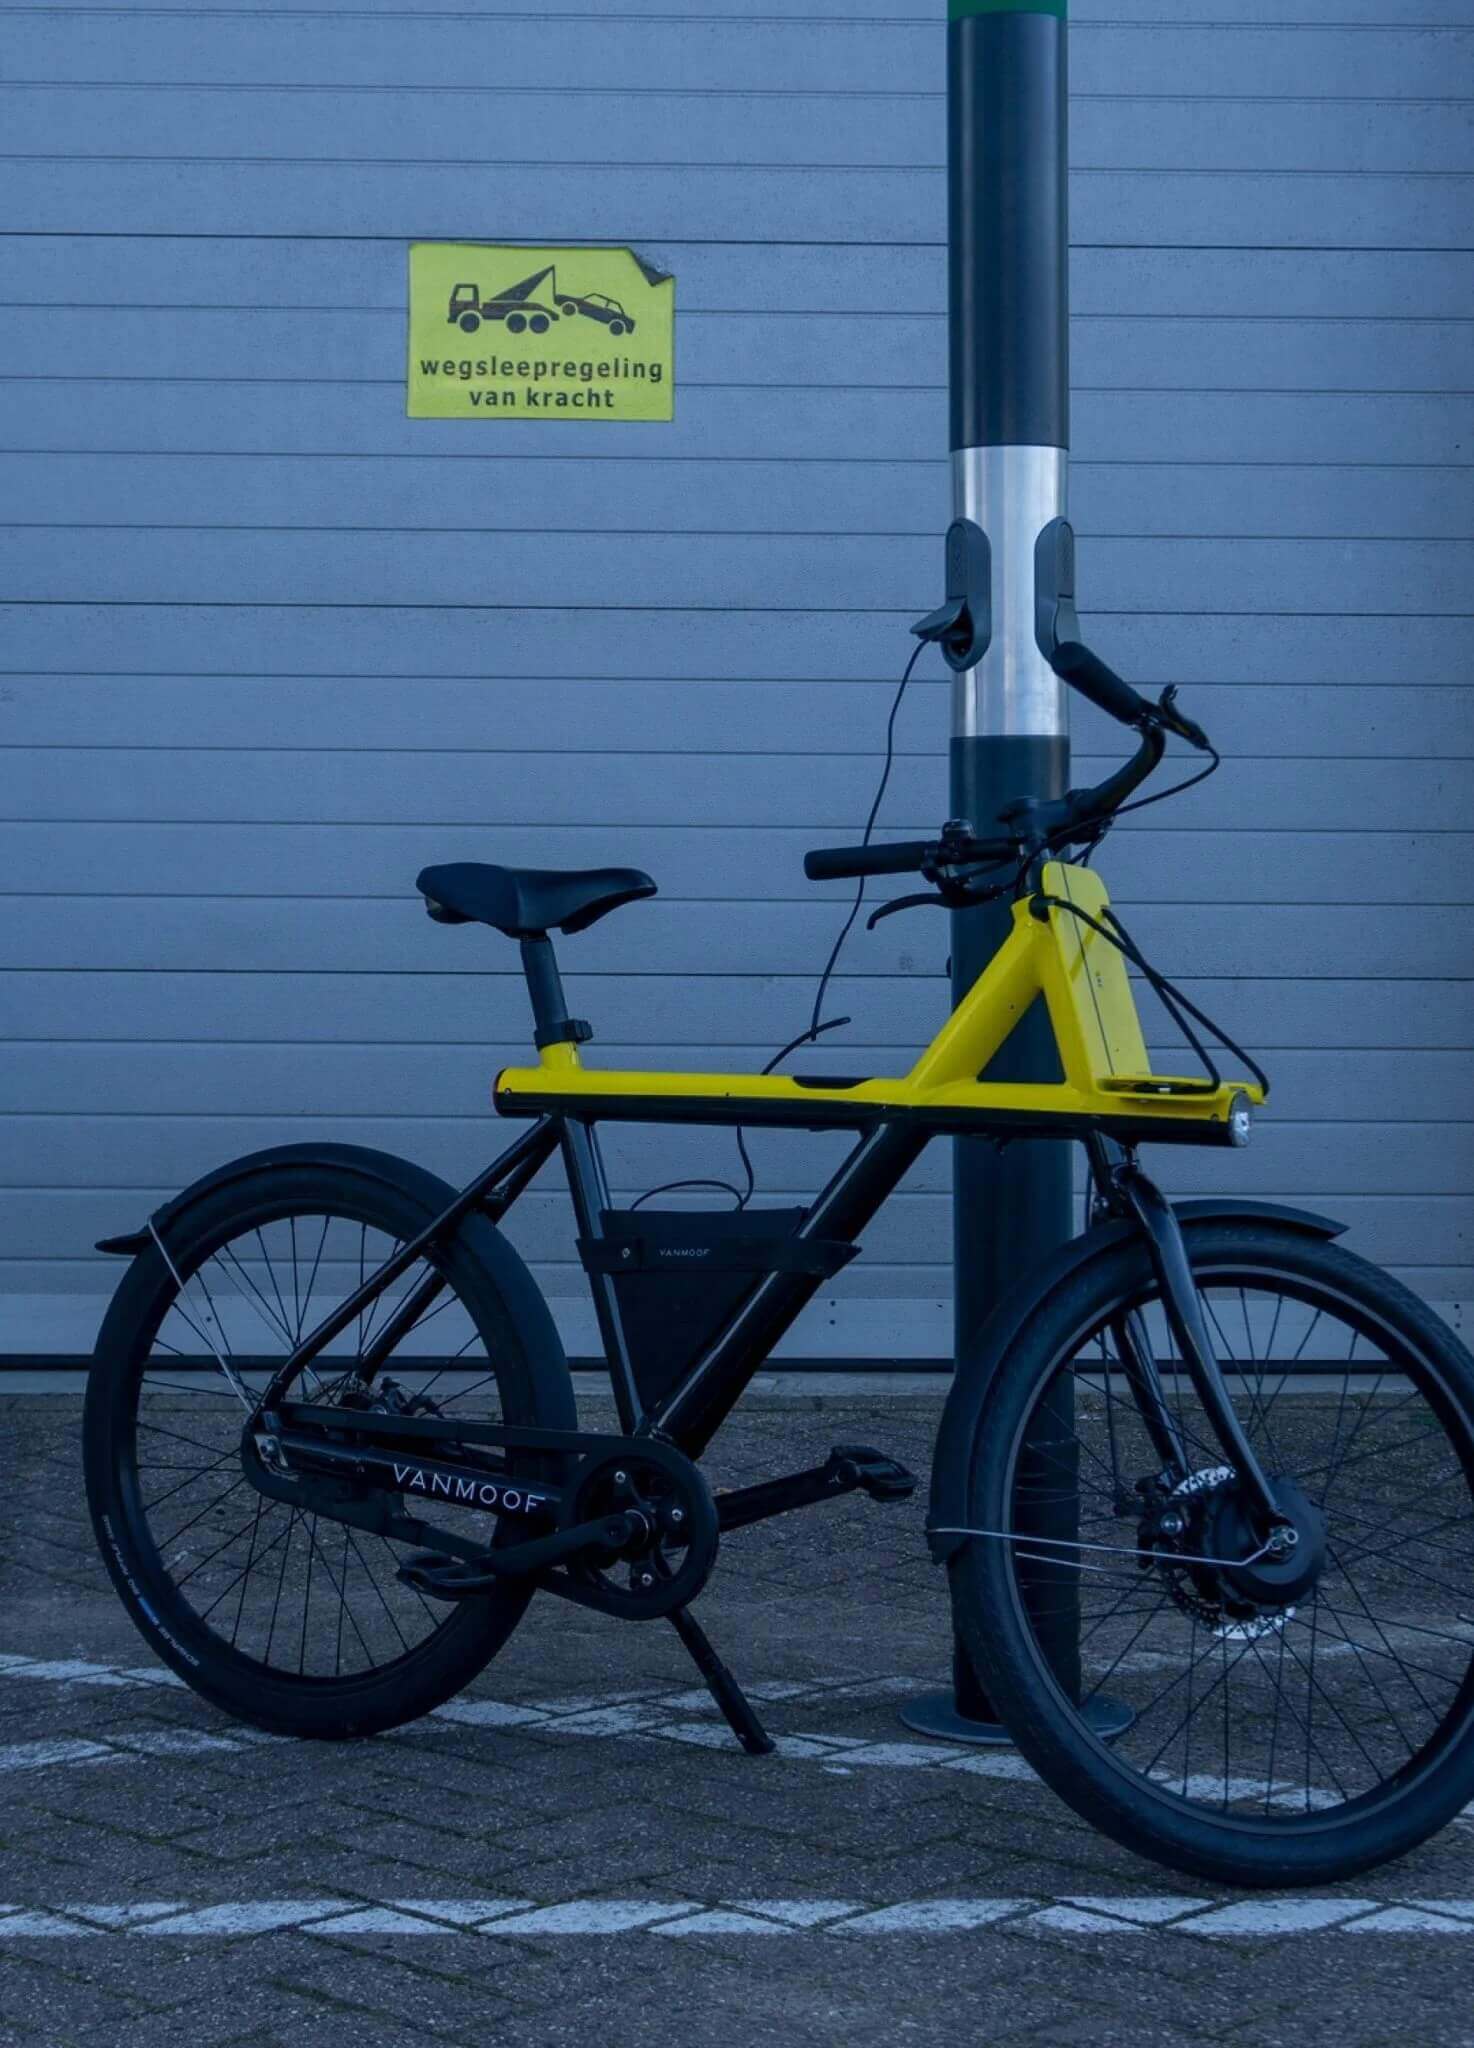 Пепельницы на вокзалах Нидерландов заменяют зарядкой для велосипедов